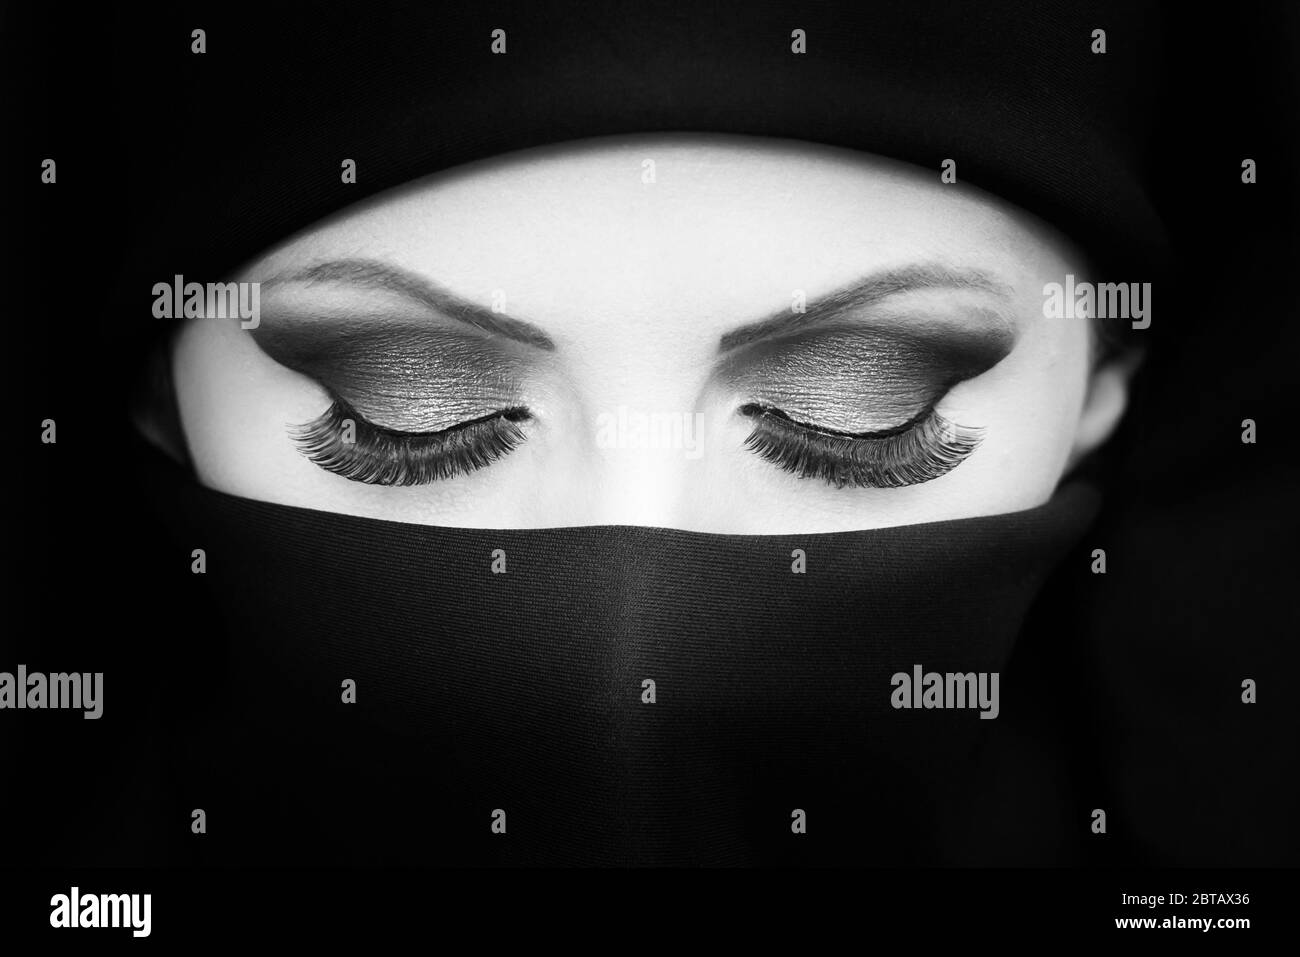 Schwarz-weiß-Porträt von schönen jungen asiatischen Mädchen / Frau mit Niqab Hervorhebung Make-up und lange Wimpern. Stockfoto